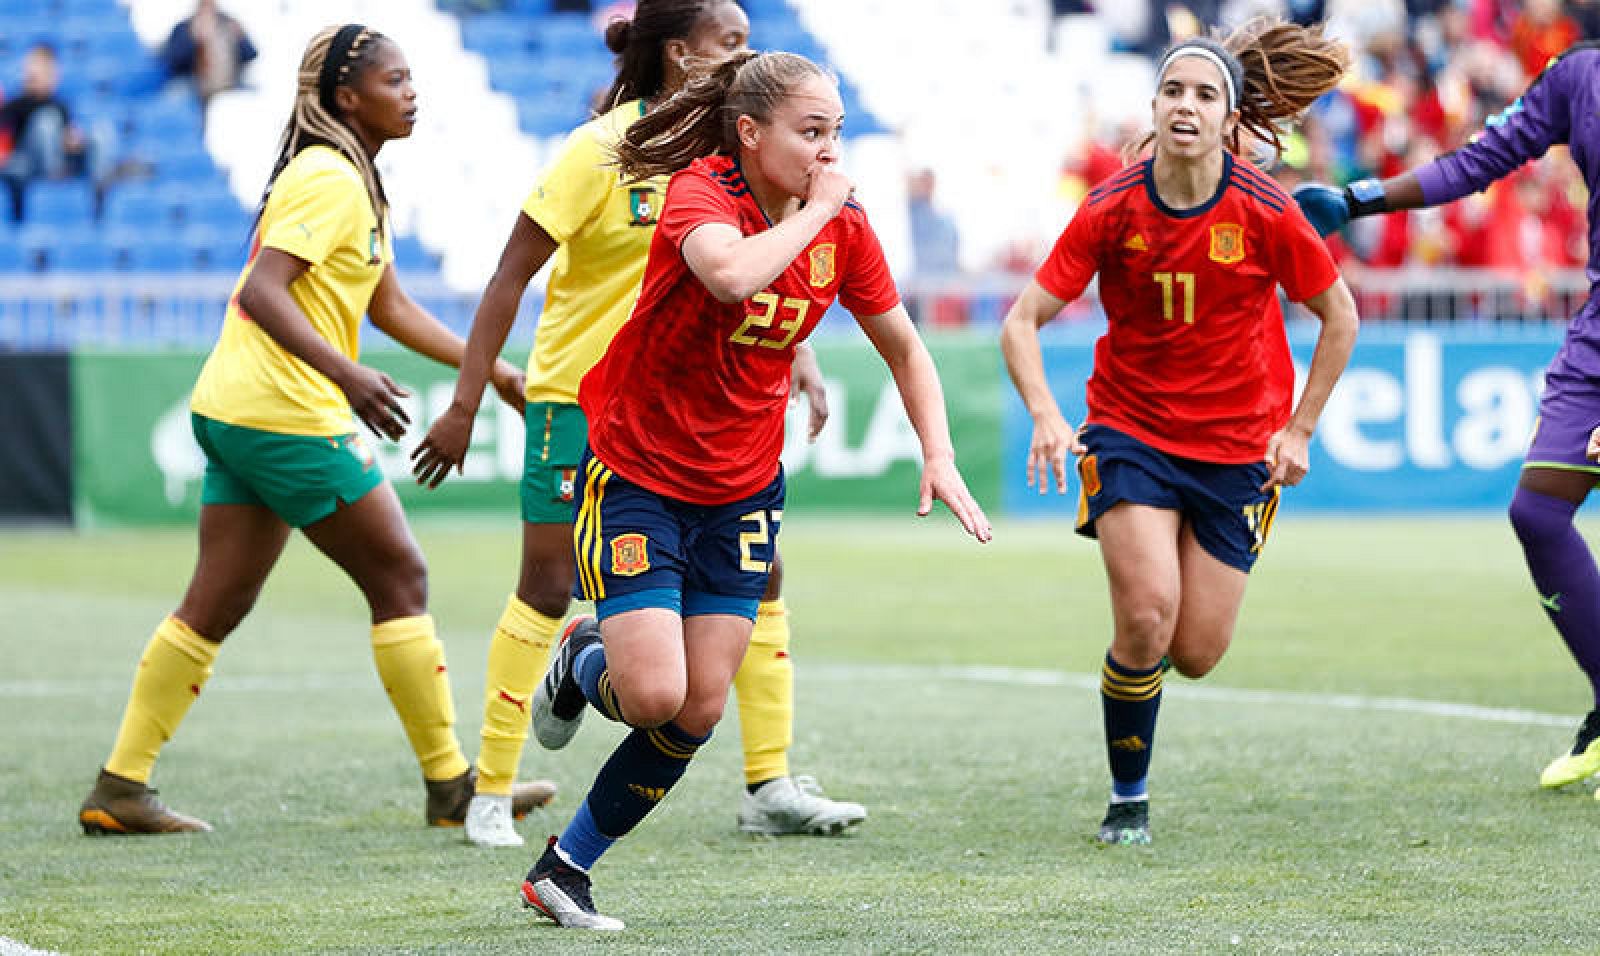 Fútbol | Amistoso | España vence con solvencia a Camerún en su preparación del Mundial - RTVE.es